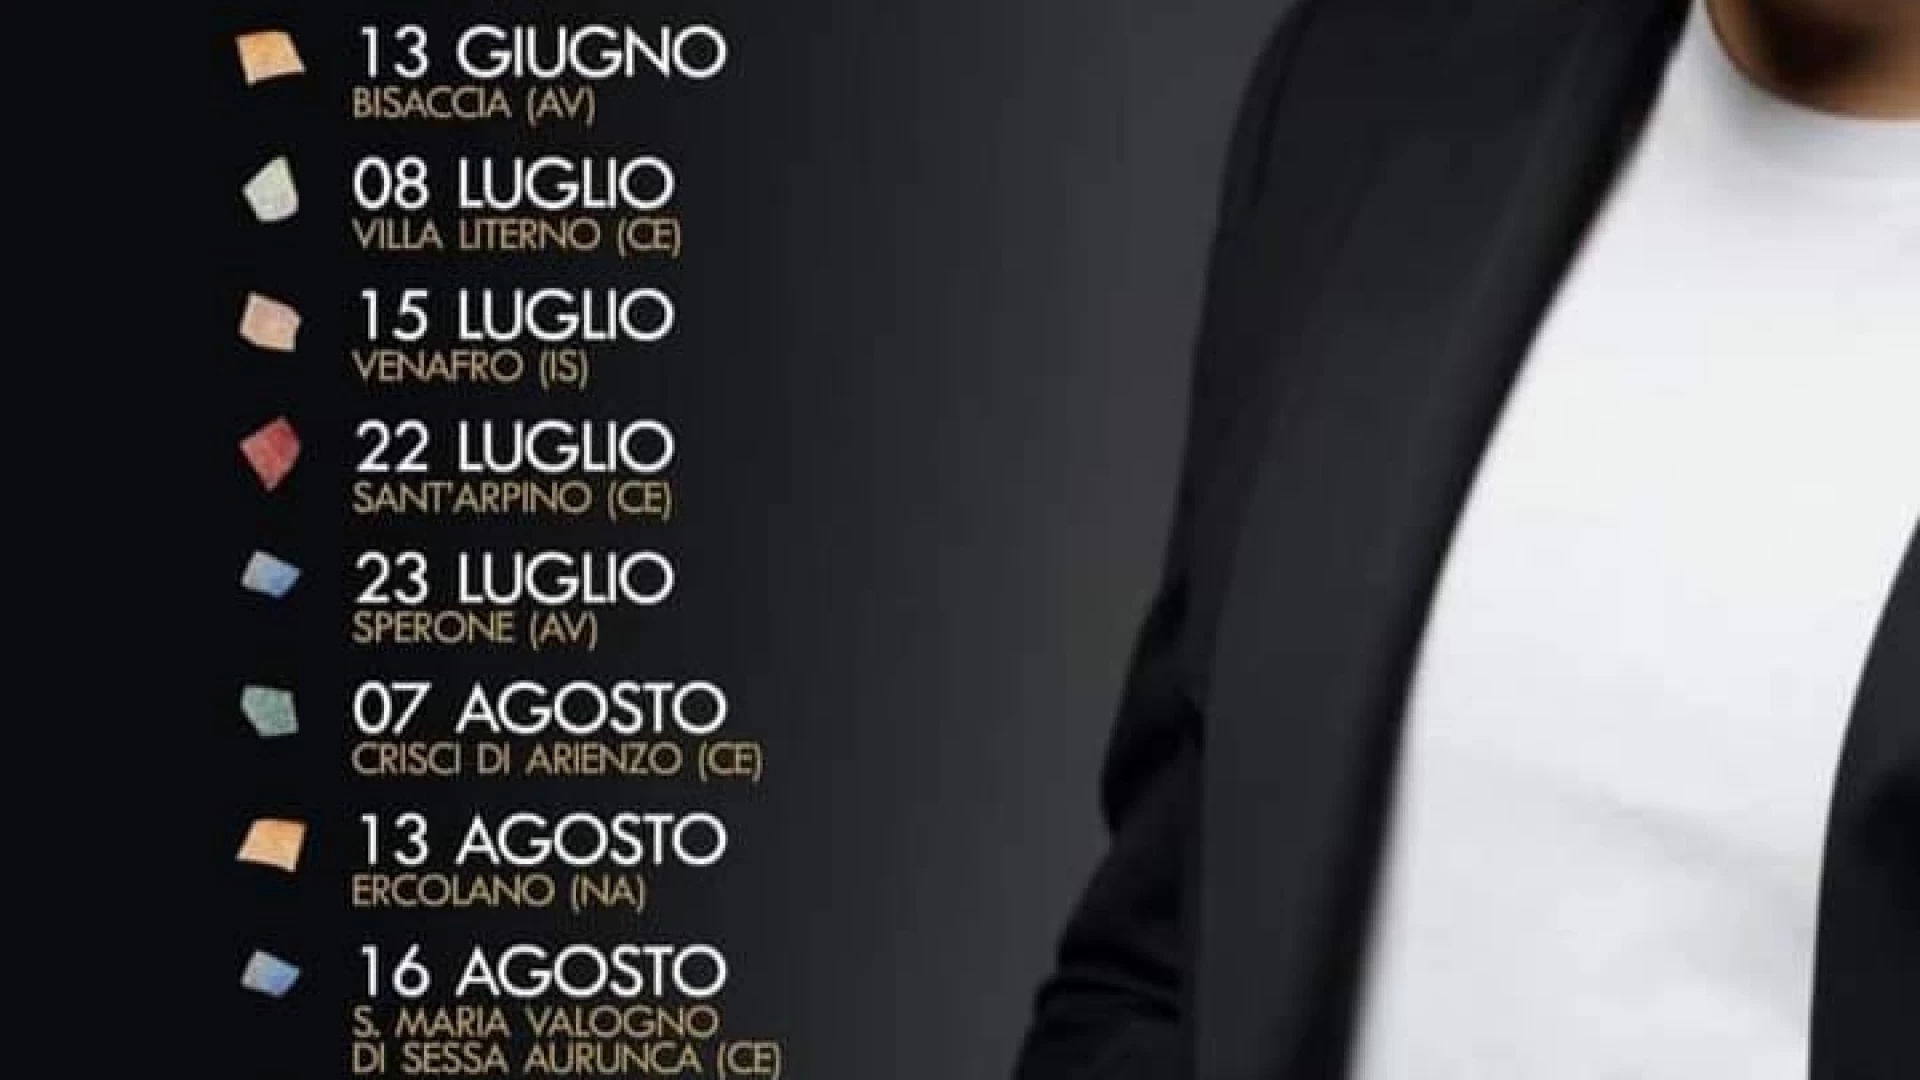 Venafro: per la Madonna del Carmine in città previsto il concerto di Andrea Sannino. Il cantautore partenopeo ufficializza le date del “Mosaico” Live Tour 2023.